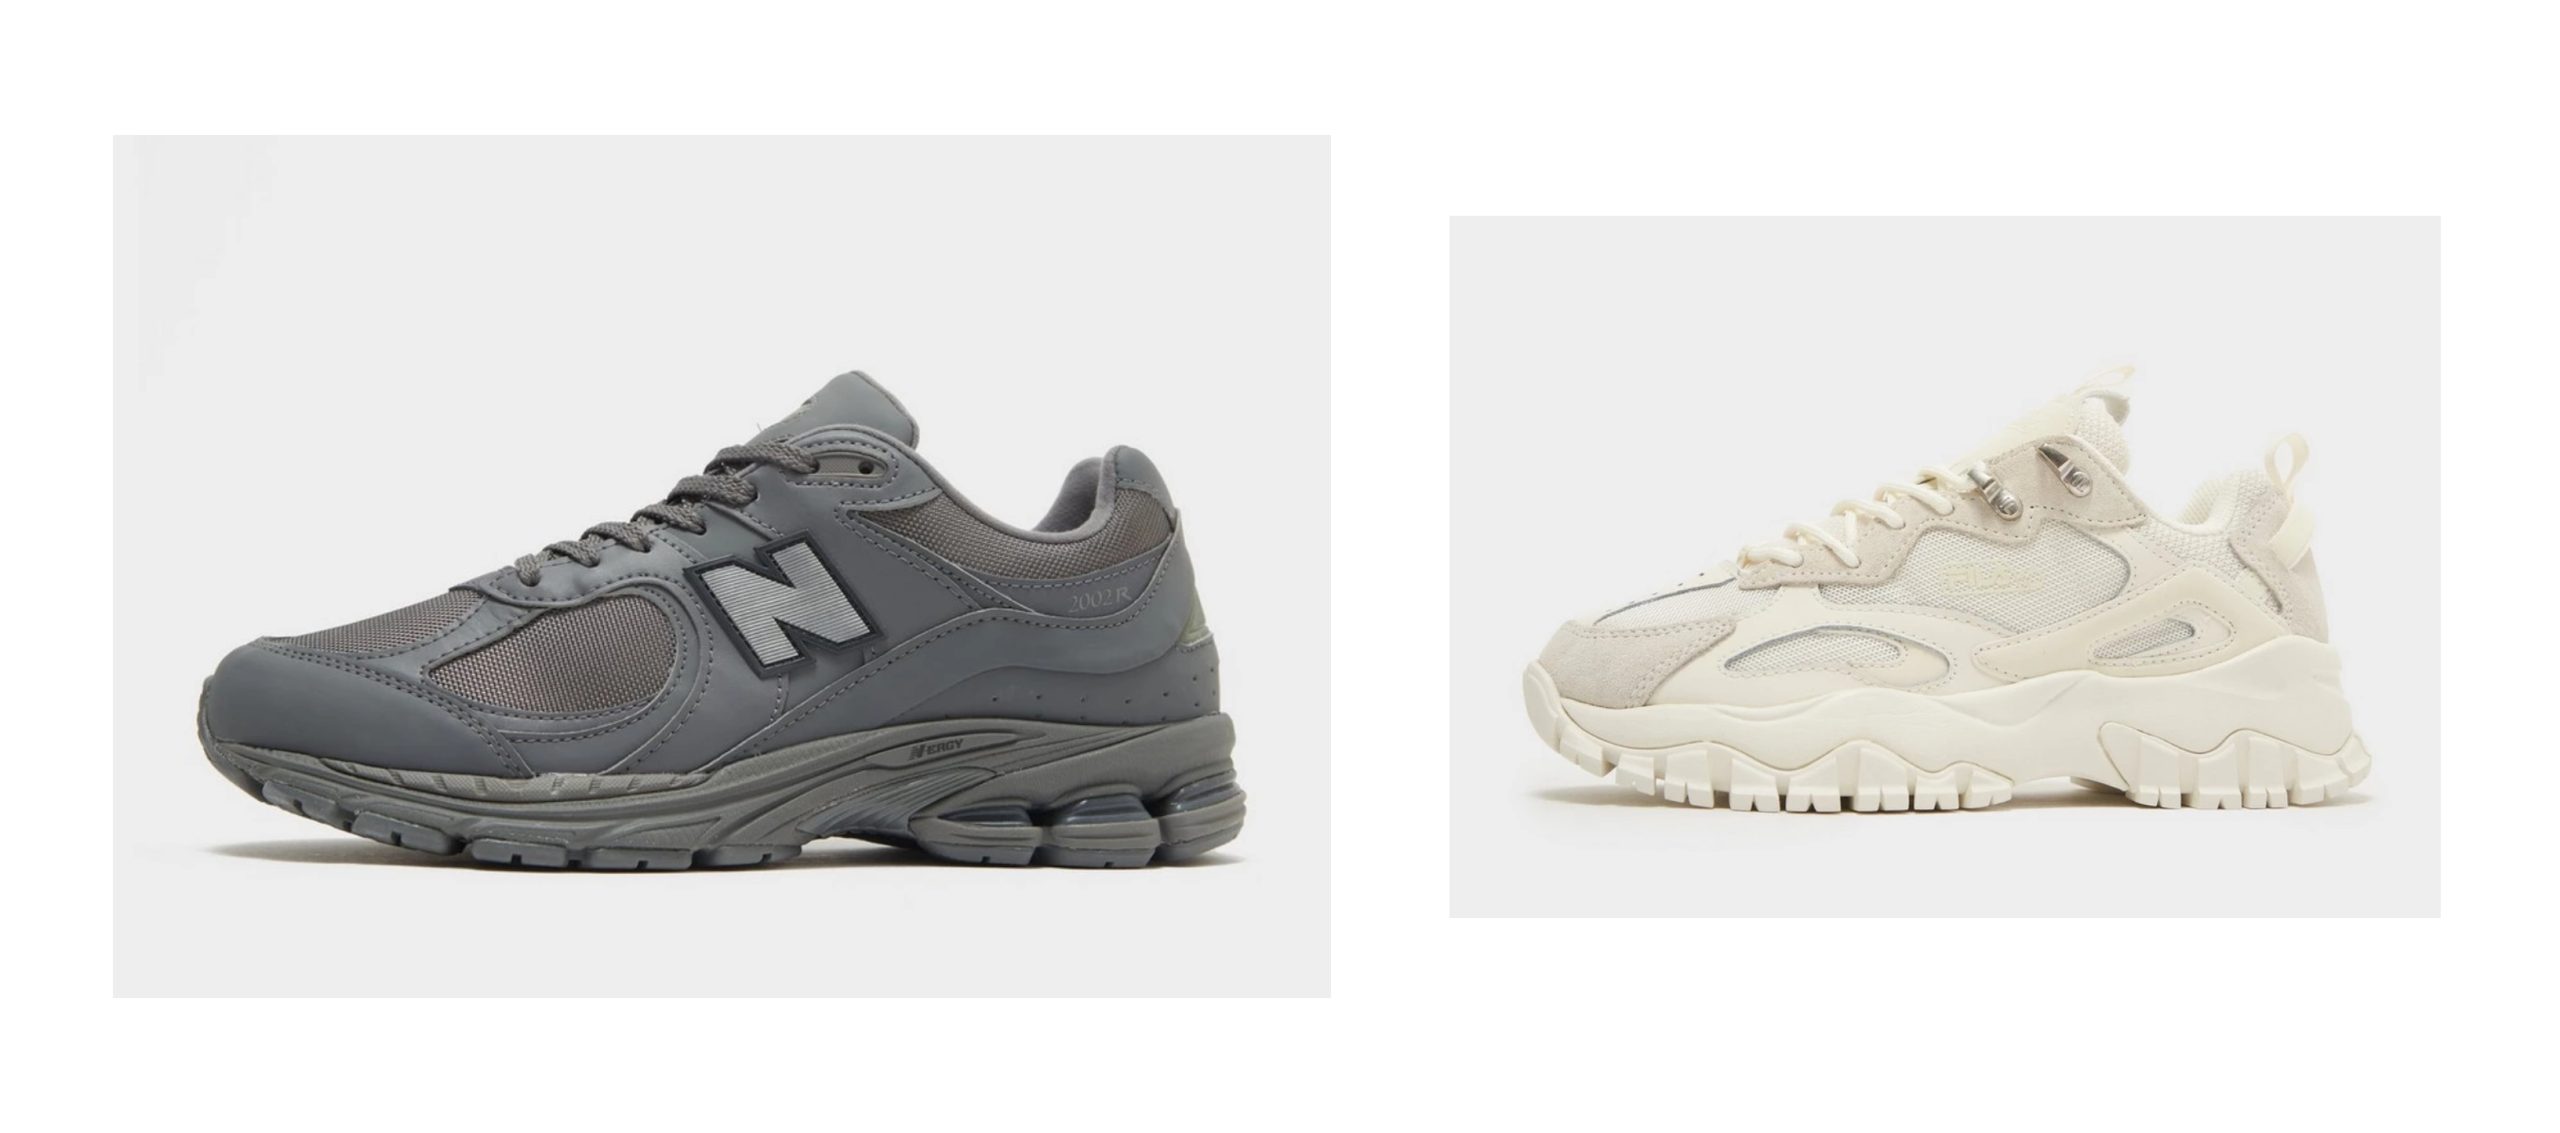 gråa New Balance skor och vita Fila skor